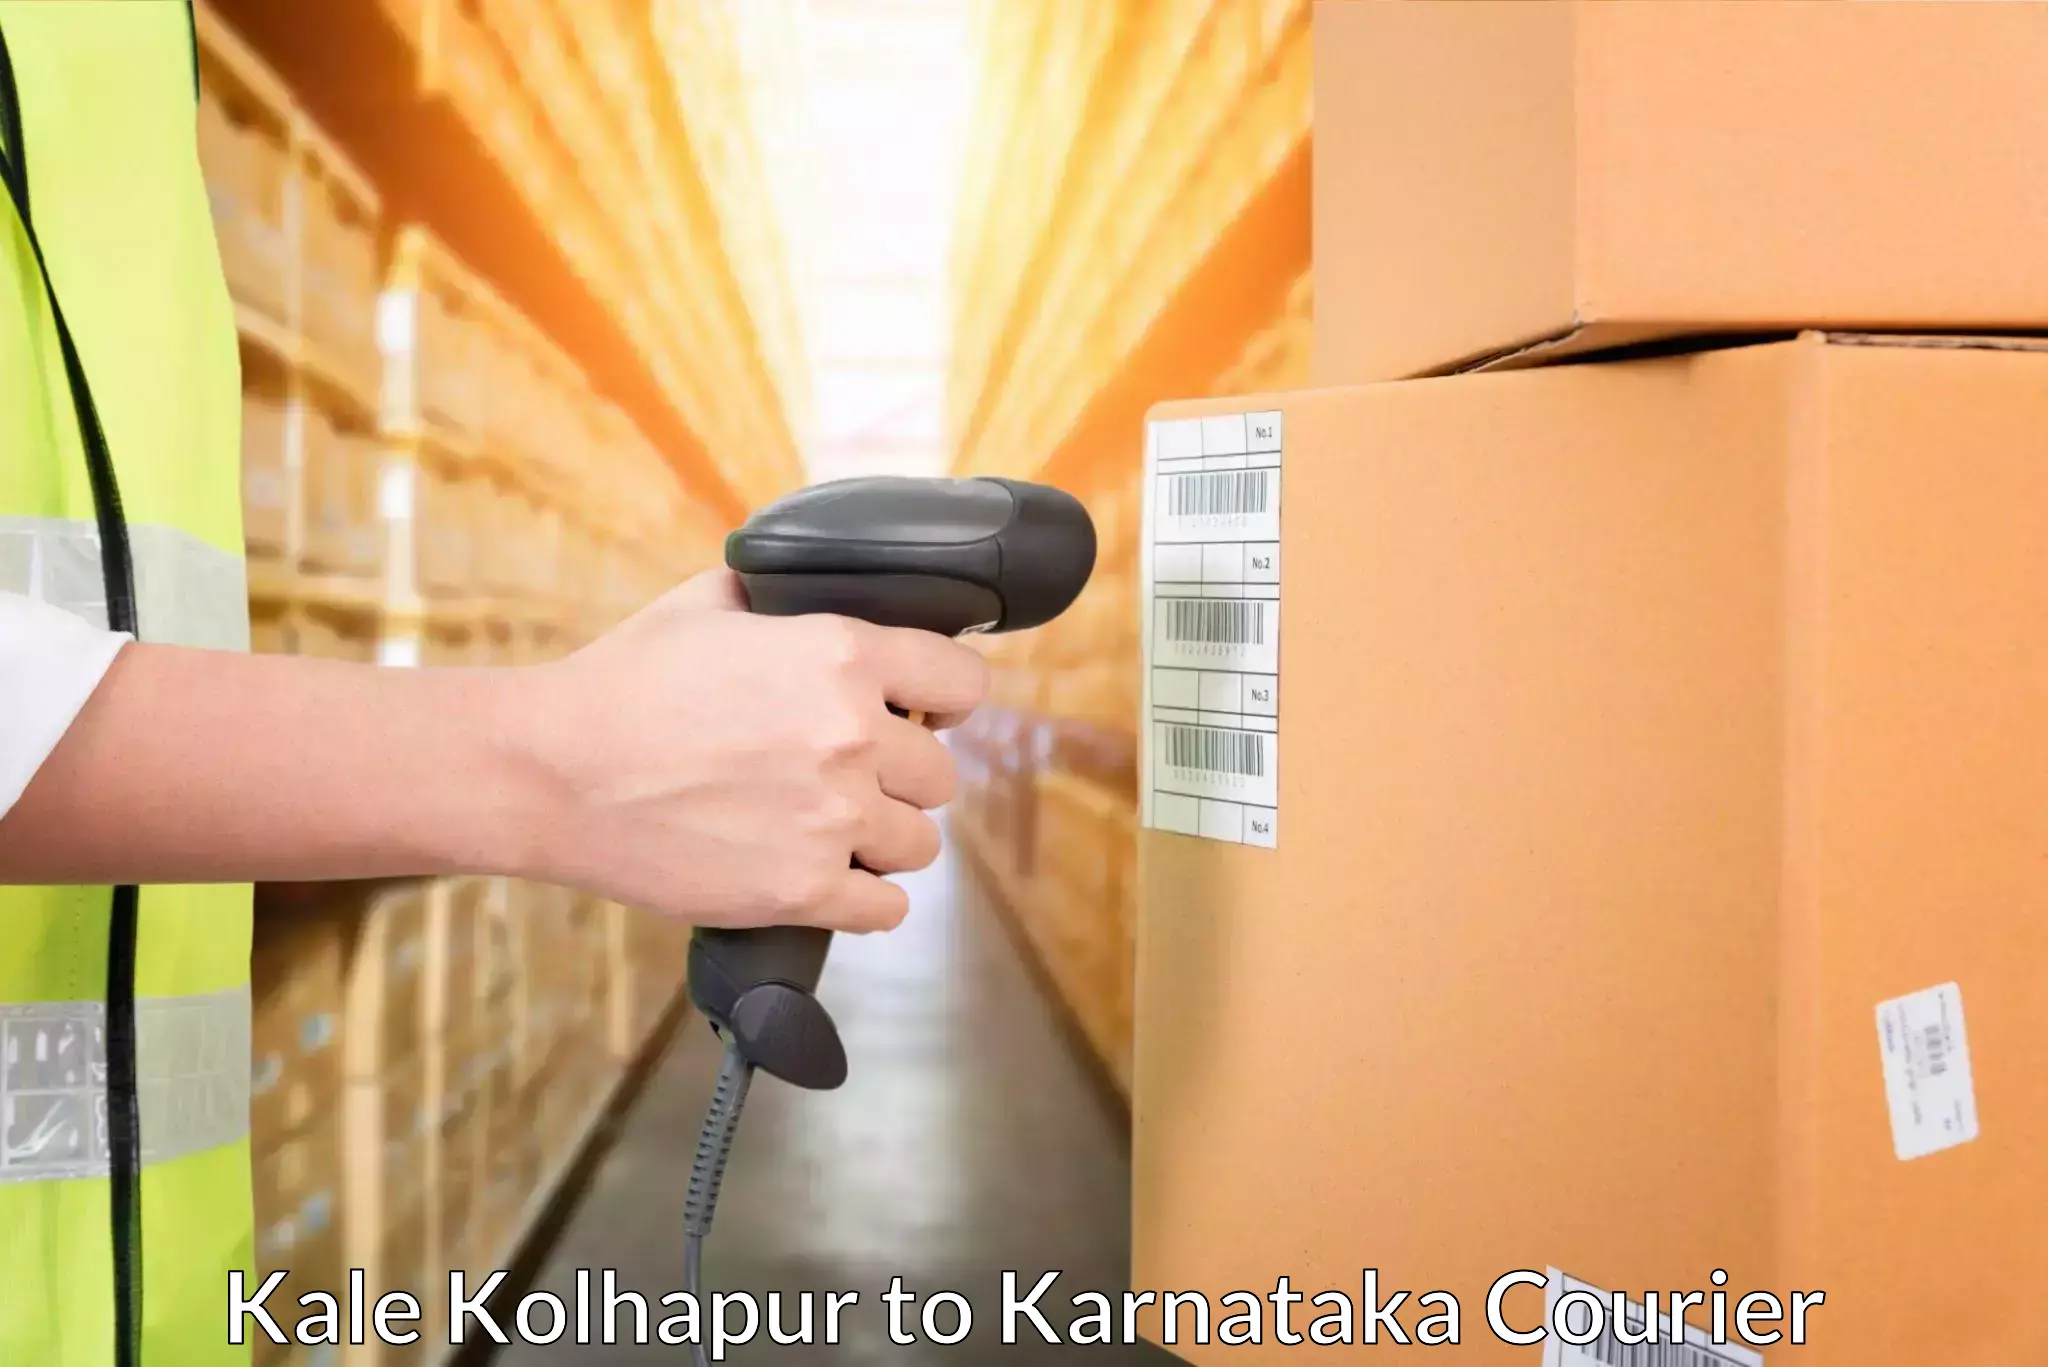 Efficient parcel service Kale Kolhapur to Bagaluru